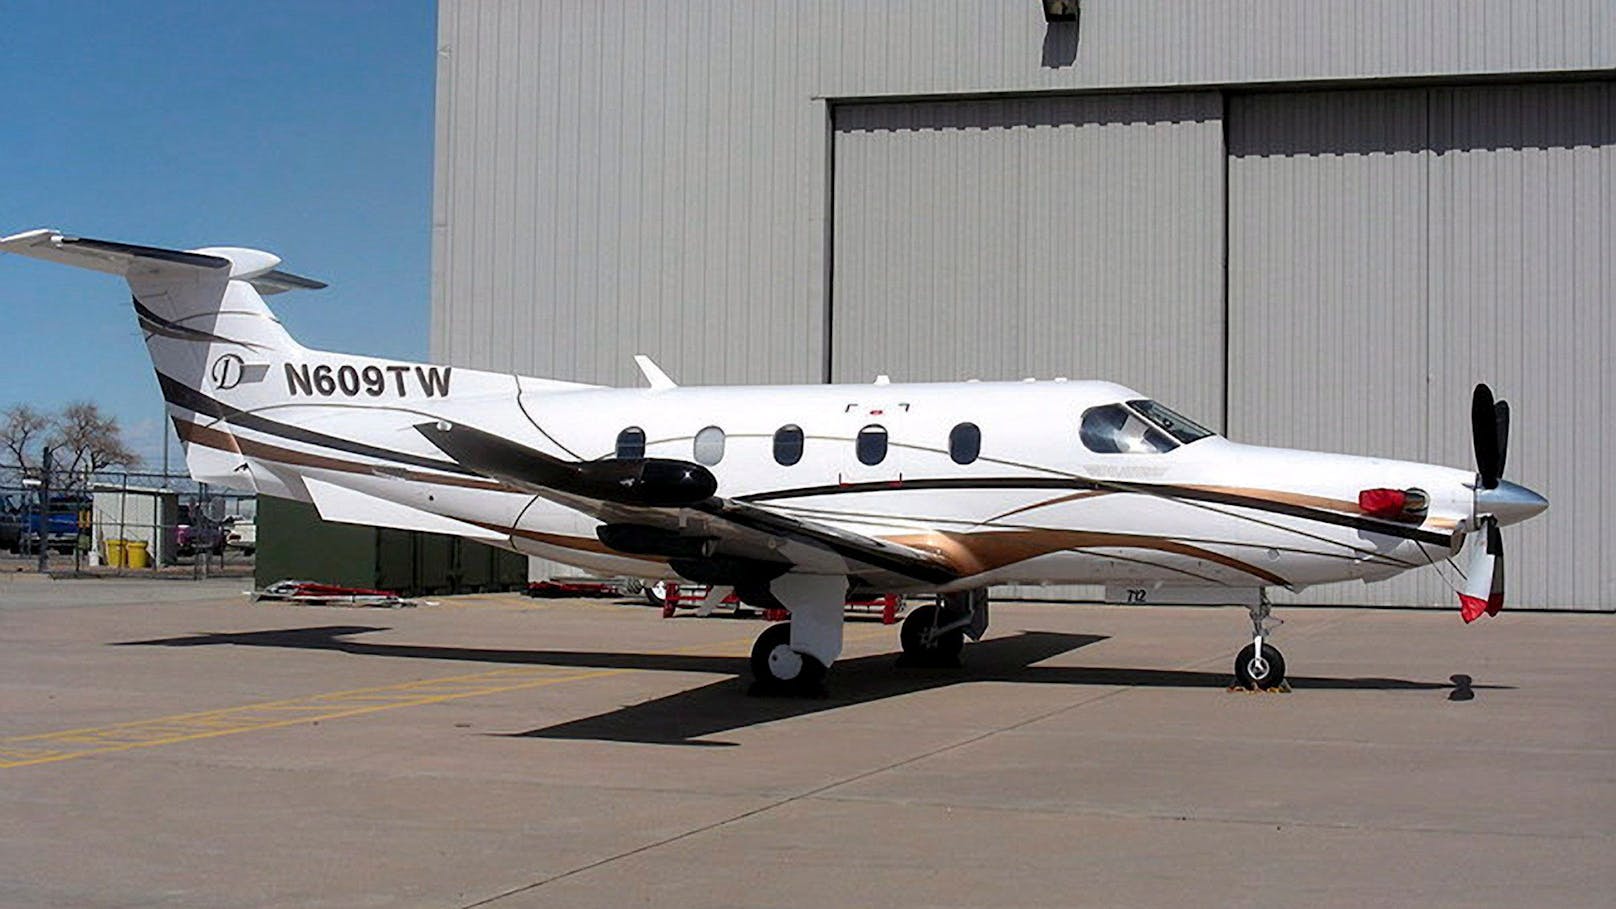 Bei dem verunglückten Flugzeug handelt es sich um eine Maschine des Typs PC-12 des Schweizer Herstellers Pilatus. (Symbolbild)